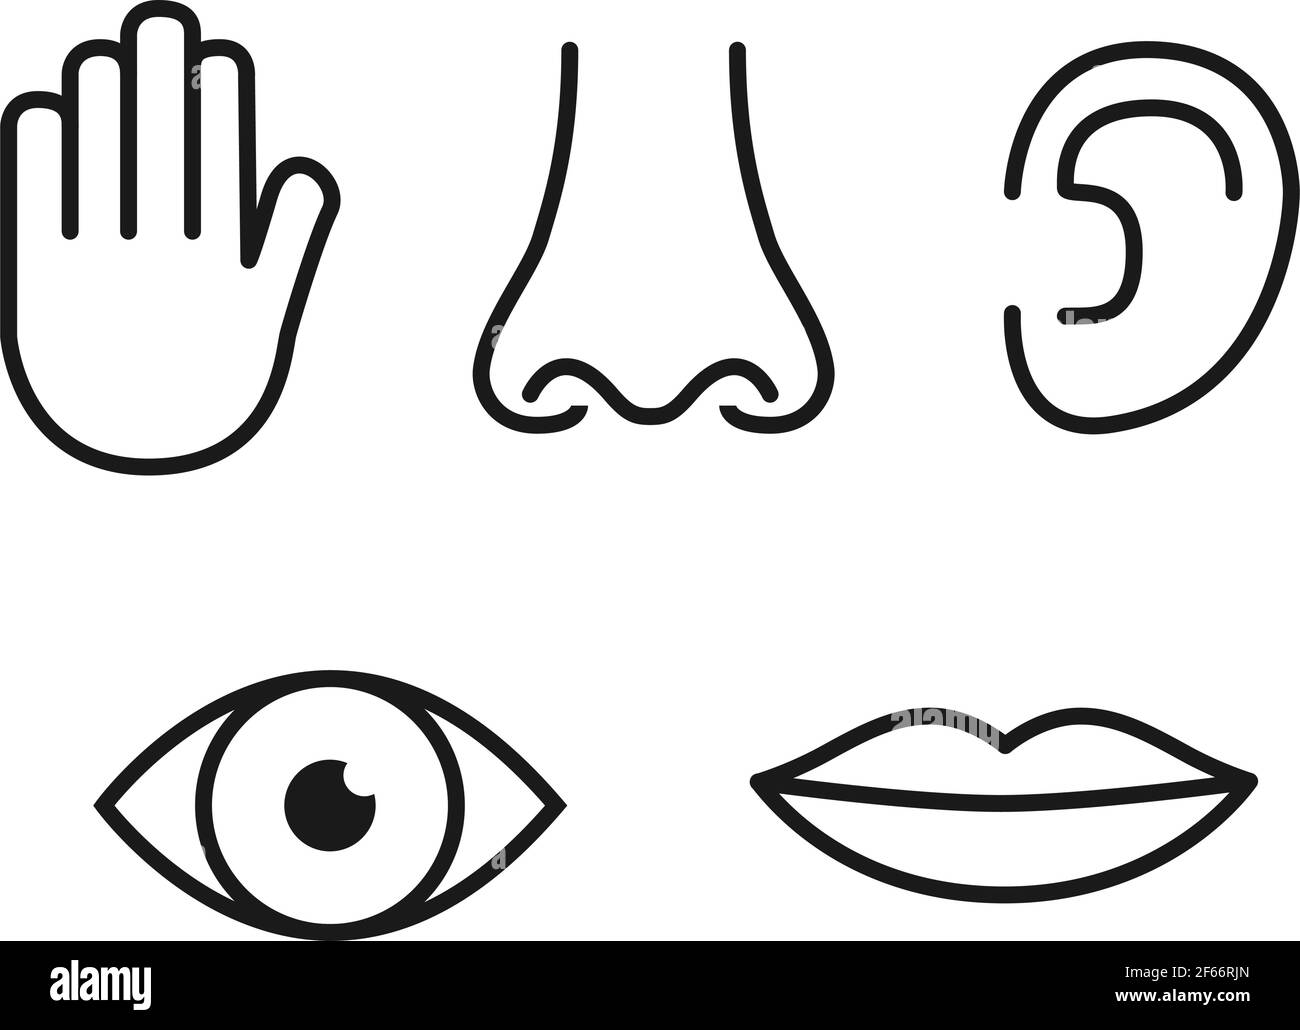 Umriss Icon Set von fünf menschlichen Sinnen: Vision (Auge), Geruch (Nase),  Hören (Ohr), Berührung (Hand), Geschmack (Mund mit Zunge Stock-Vektorgrafik  - Alamy